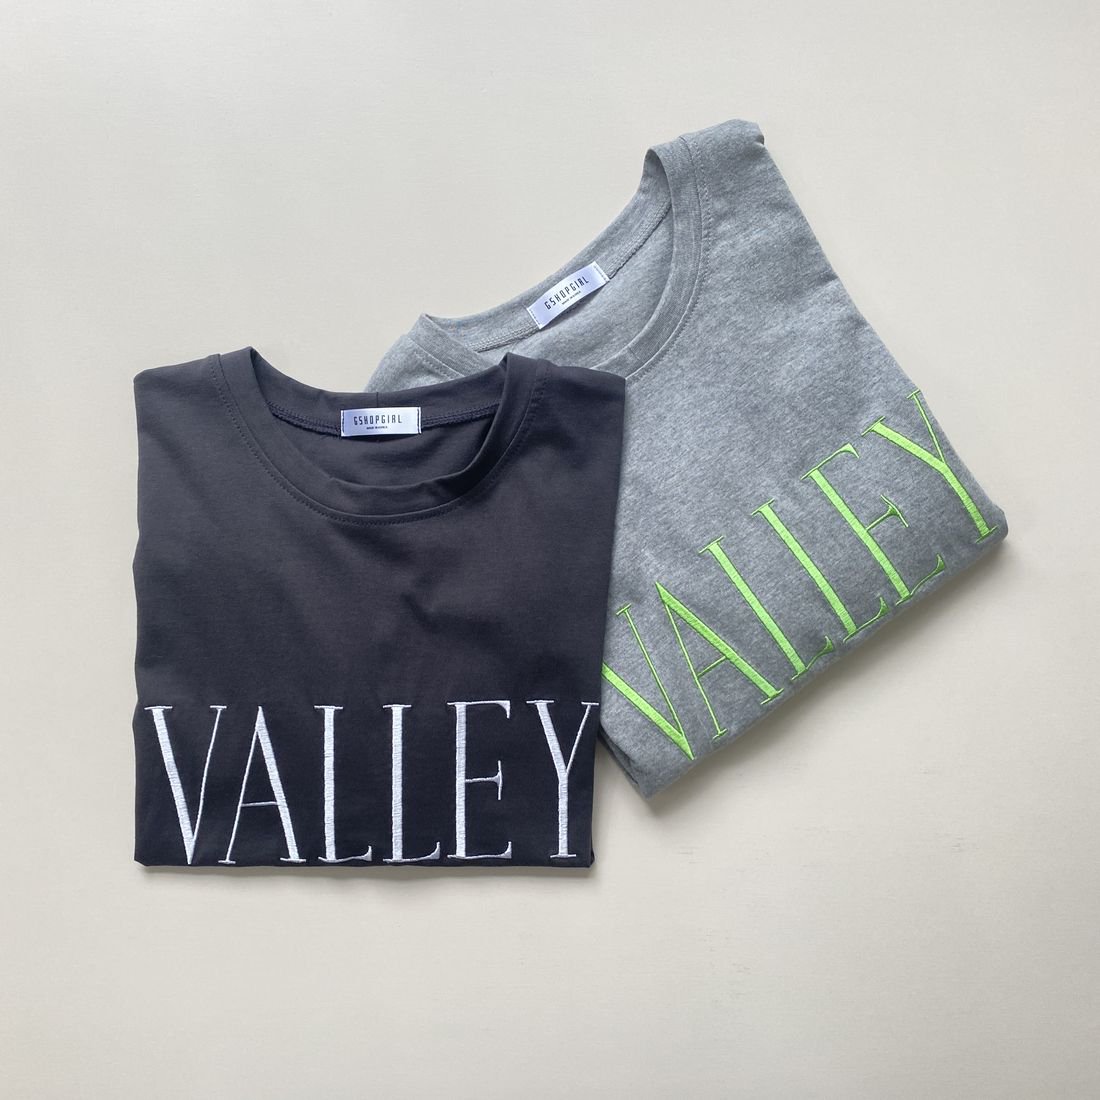 OTONA/ VALLY T-shirt